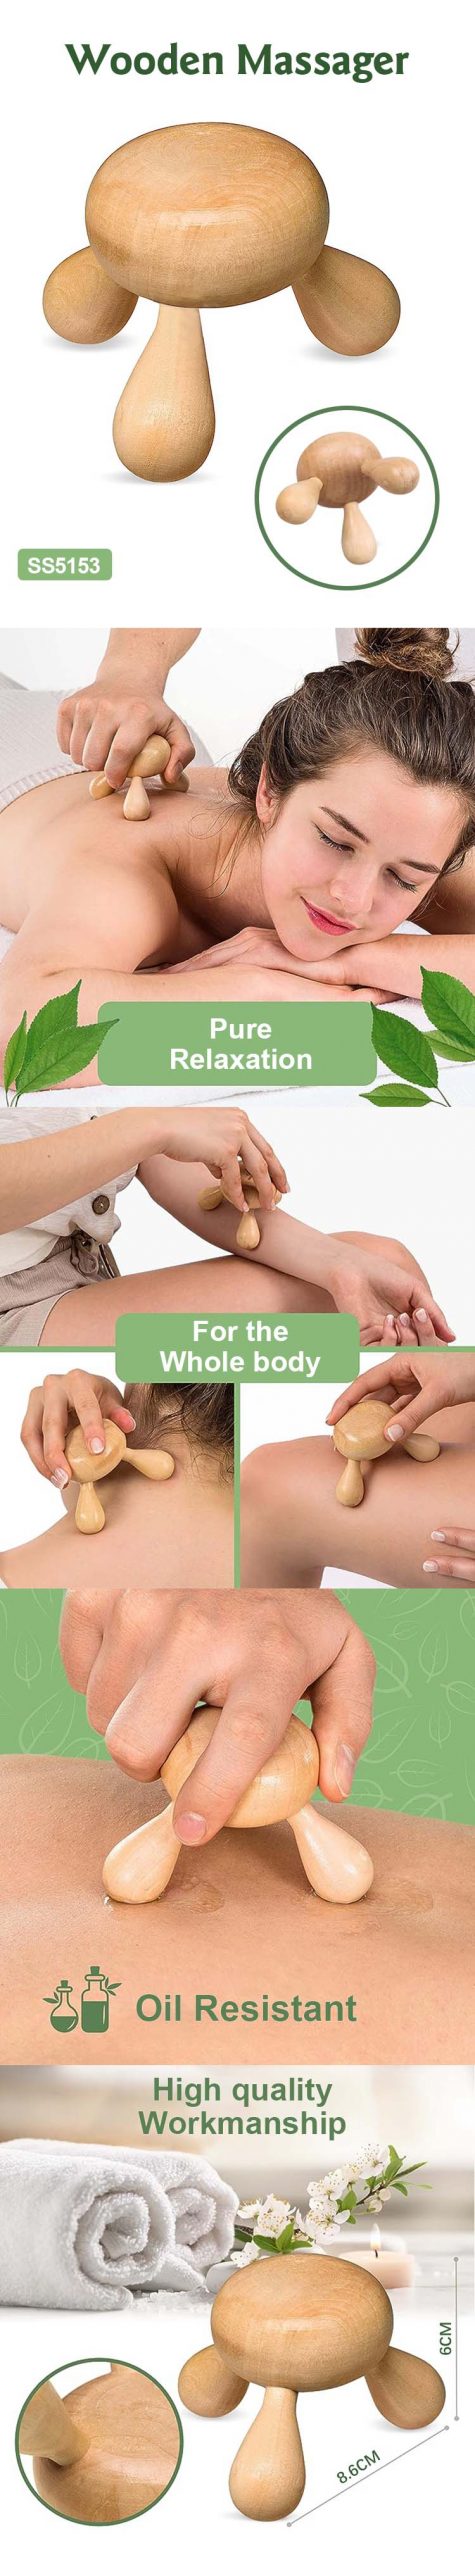 Wooden Massager—Ecofriendly